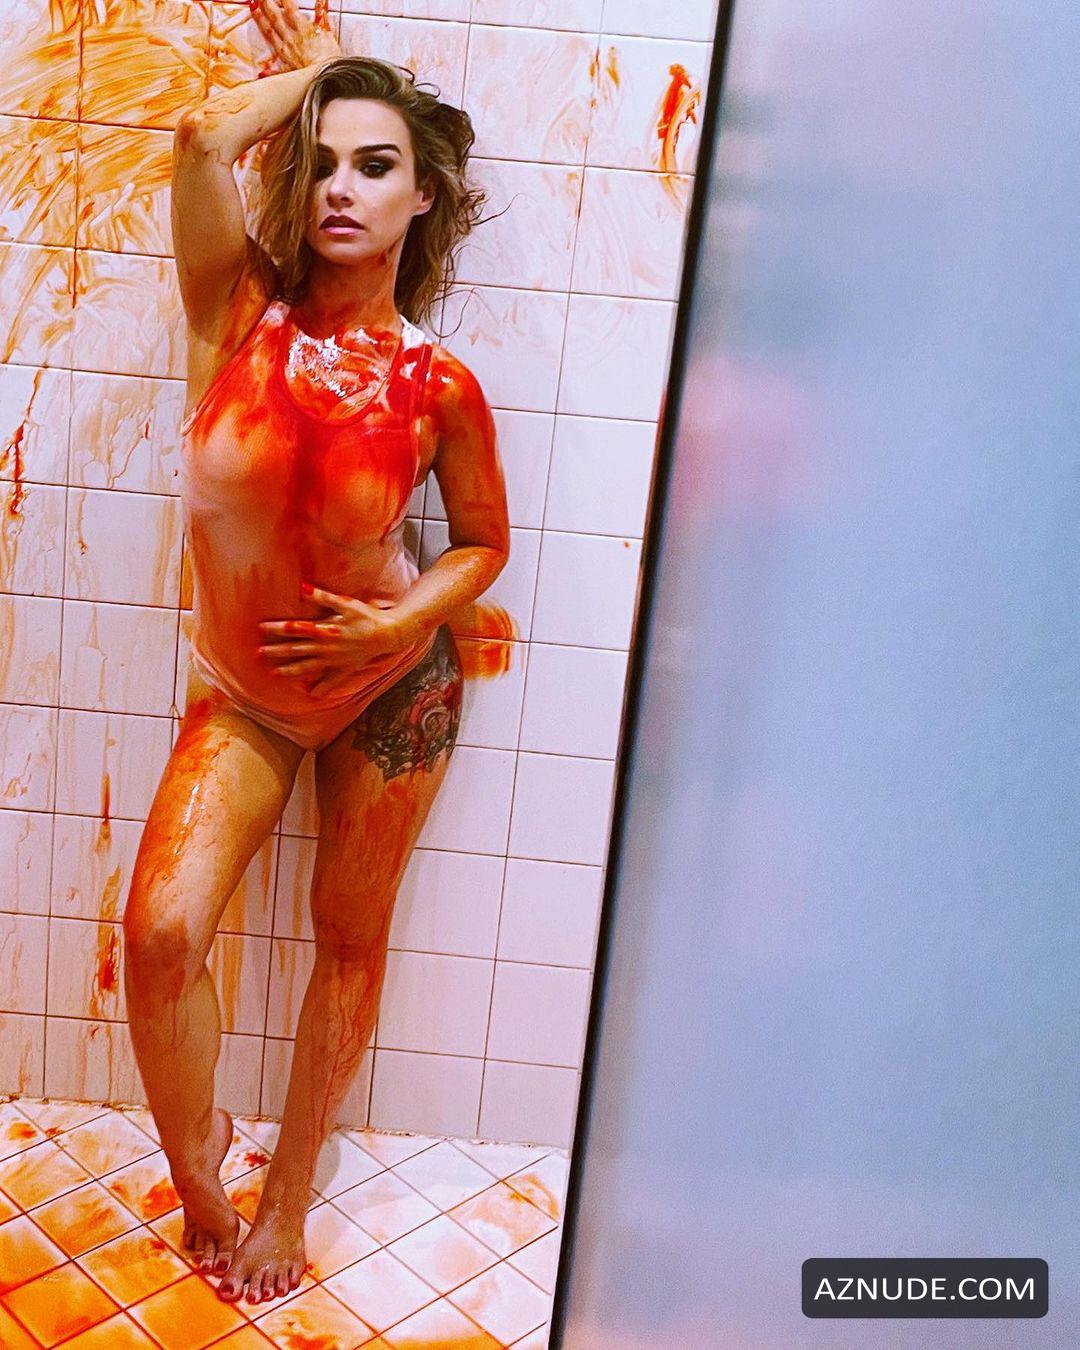 Danielle Harris Nude And Sexy Photos Collection - AZNude